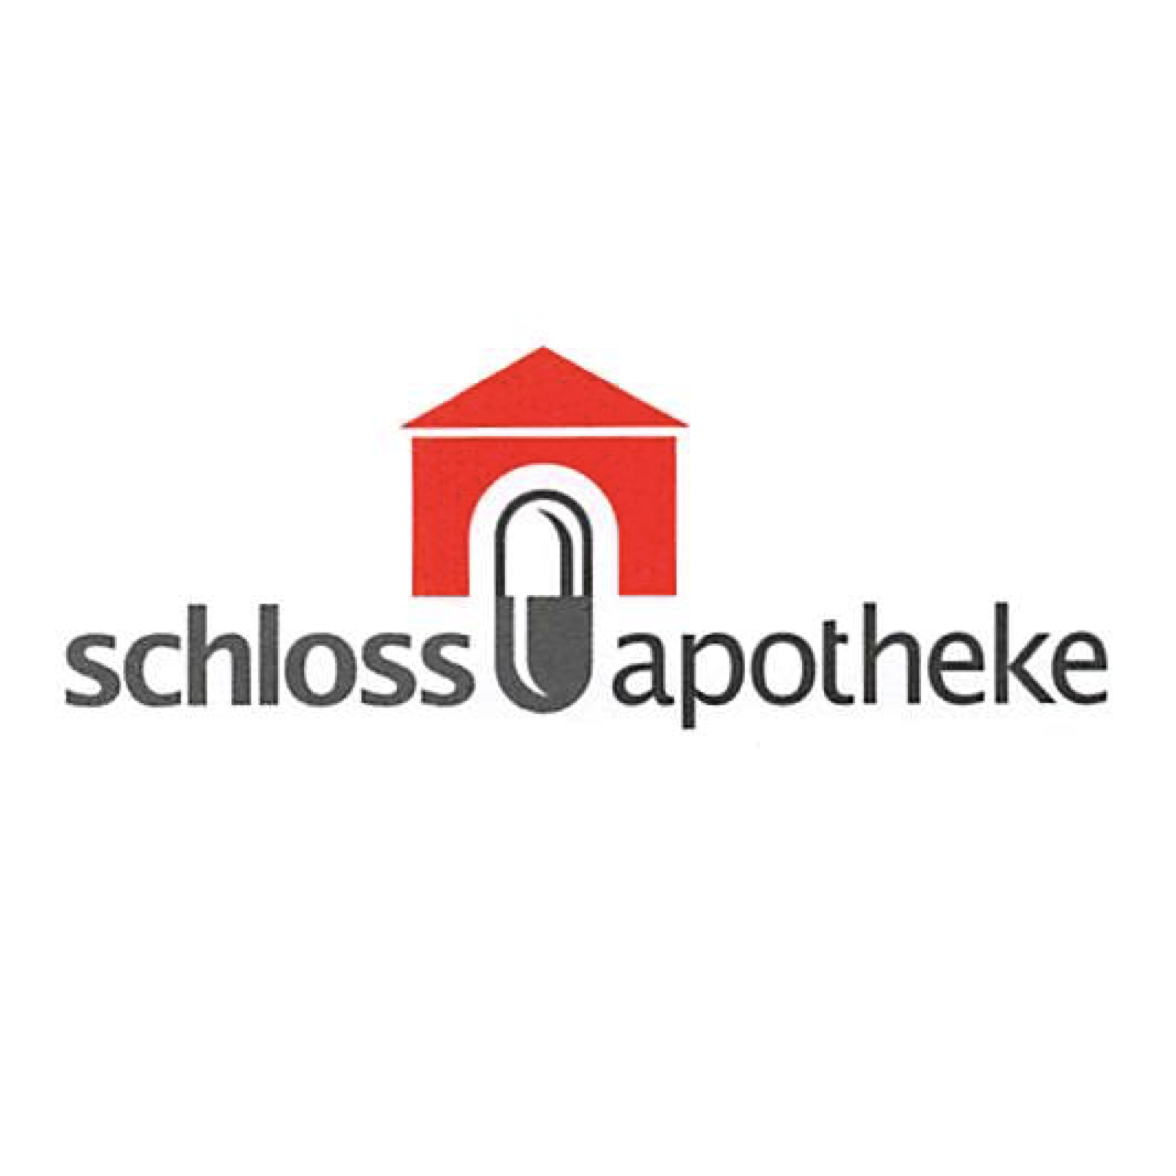 Schloss-Apotheke in Philippsthal an der Werra - Logo